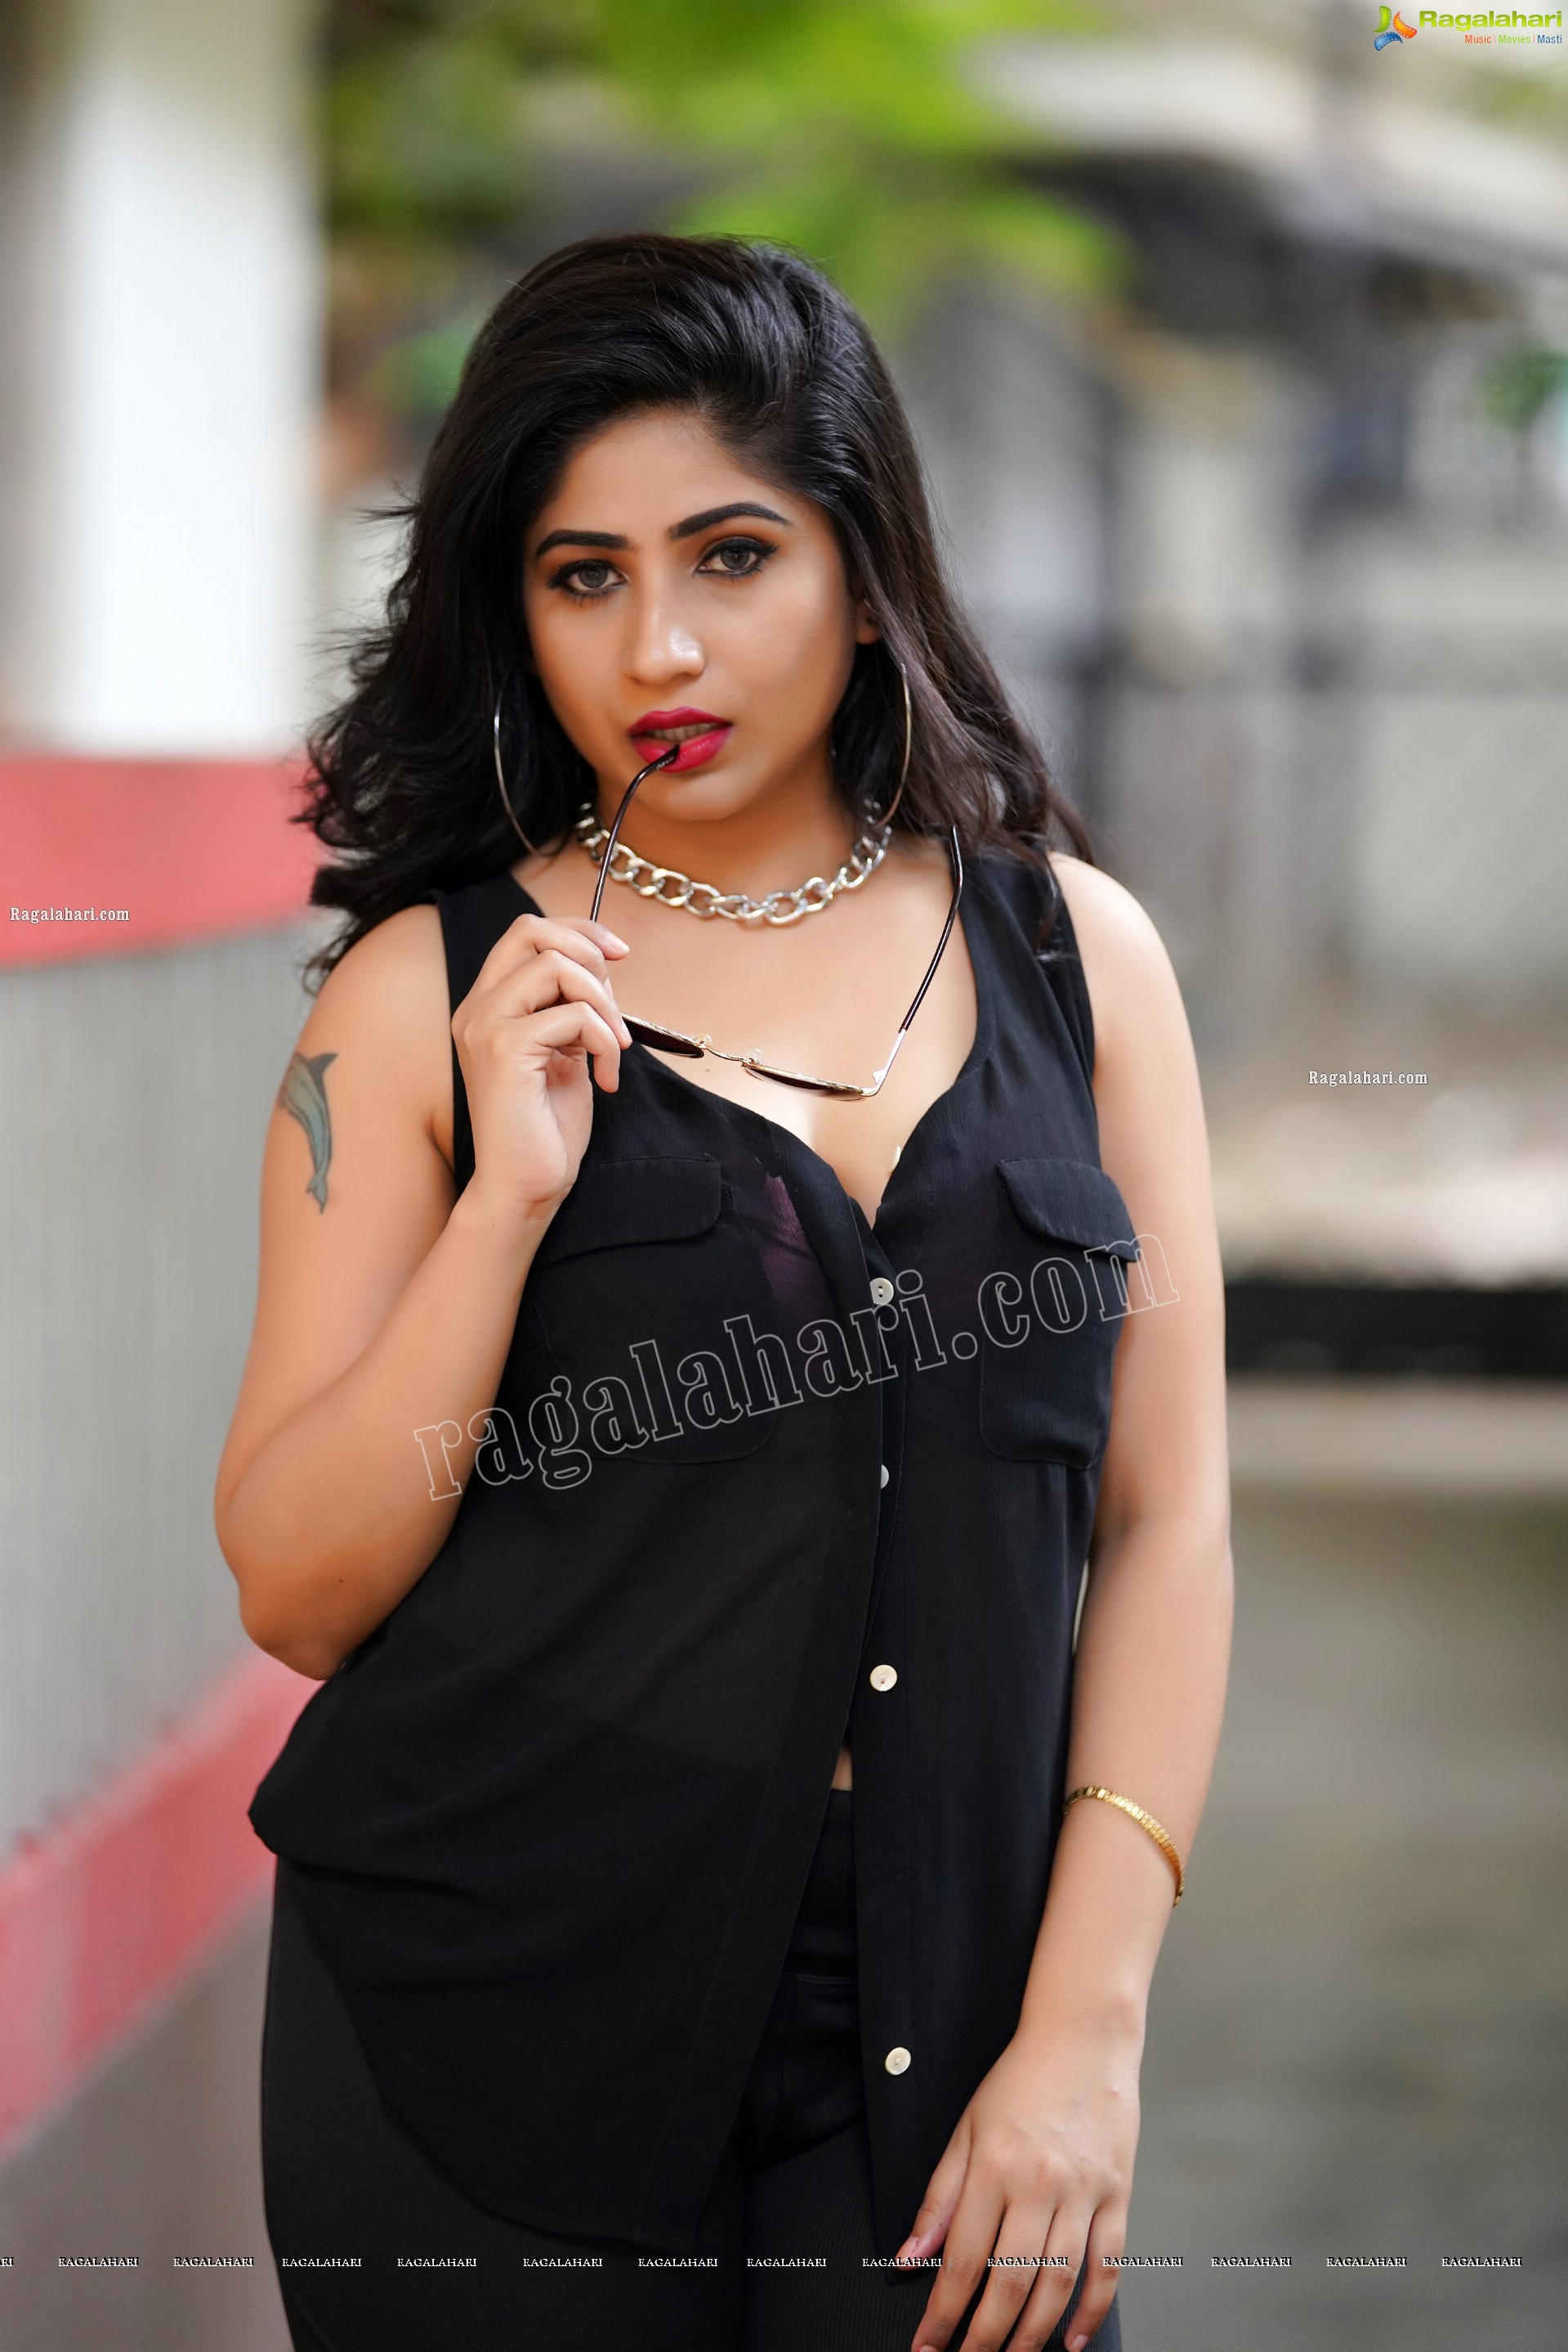 Madhulagna Das Latest Stills in Black Shirt, Exclusive Photoshoot